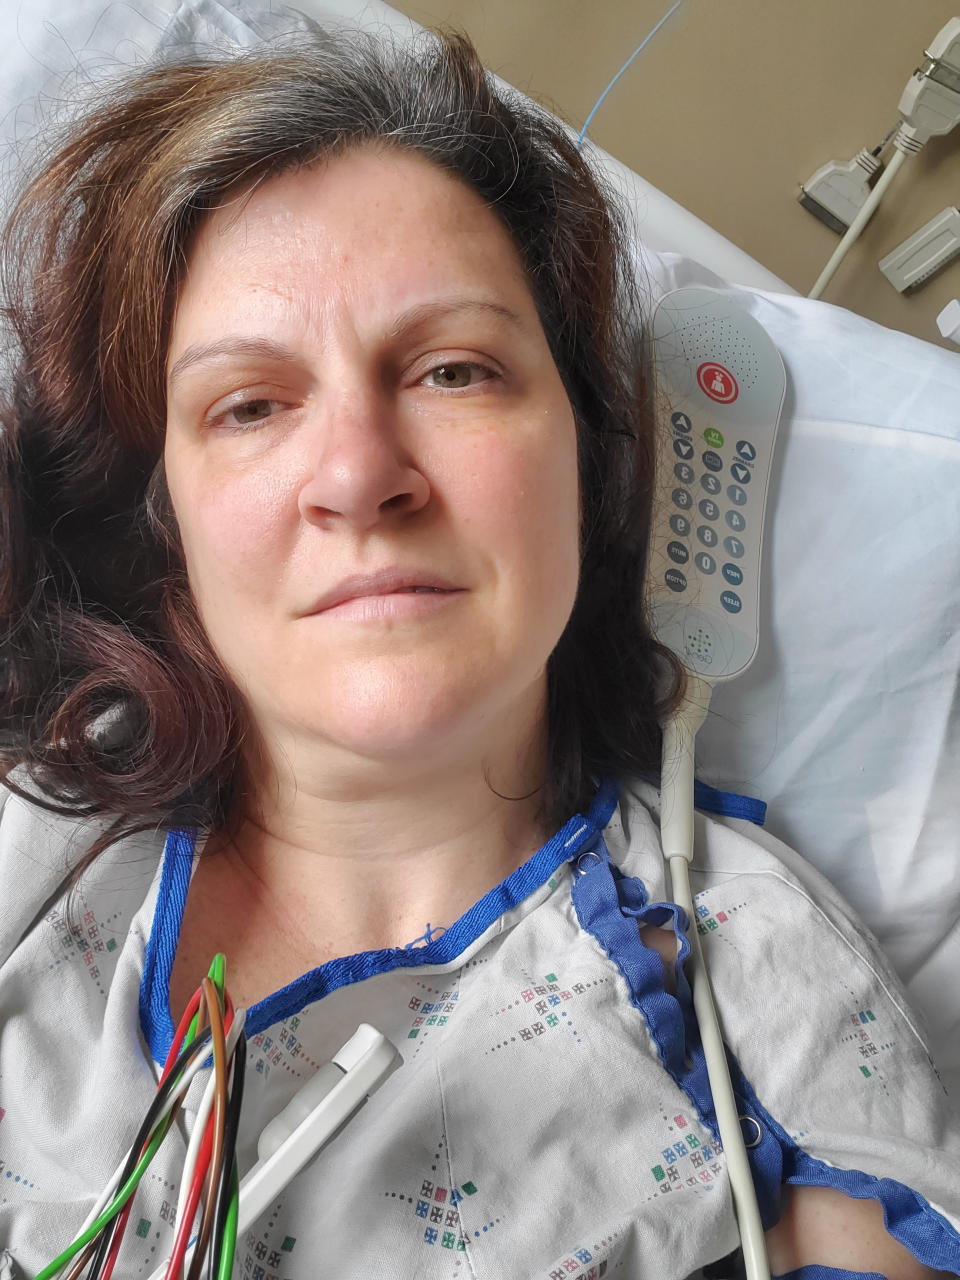 Esta fotografía del 6 de mayo de 2020 facilitada por Darlene Gildersleeve, de 43 años, de Hopkinton, Nueva Hampshire, la muestra cuando estuvo internada en un hospital en Manchester después de sufrir embolias debido a unos trombos relacionados con el COVID-19. (Darlene Gildersleeve via AP)